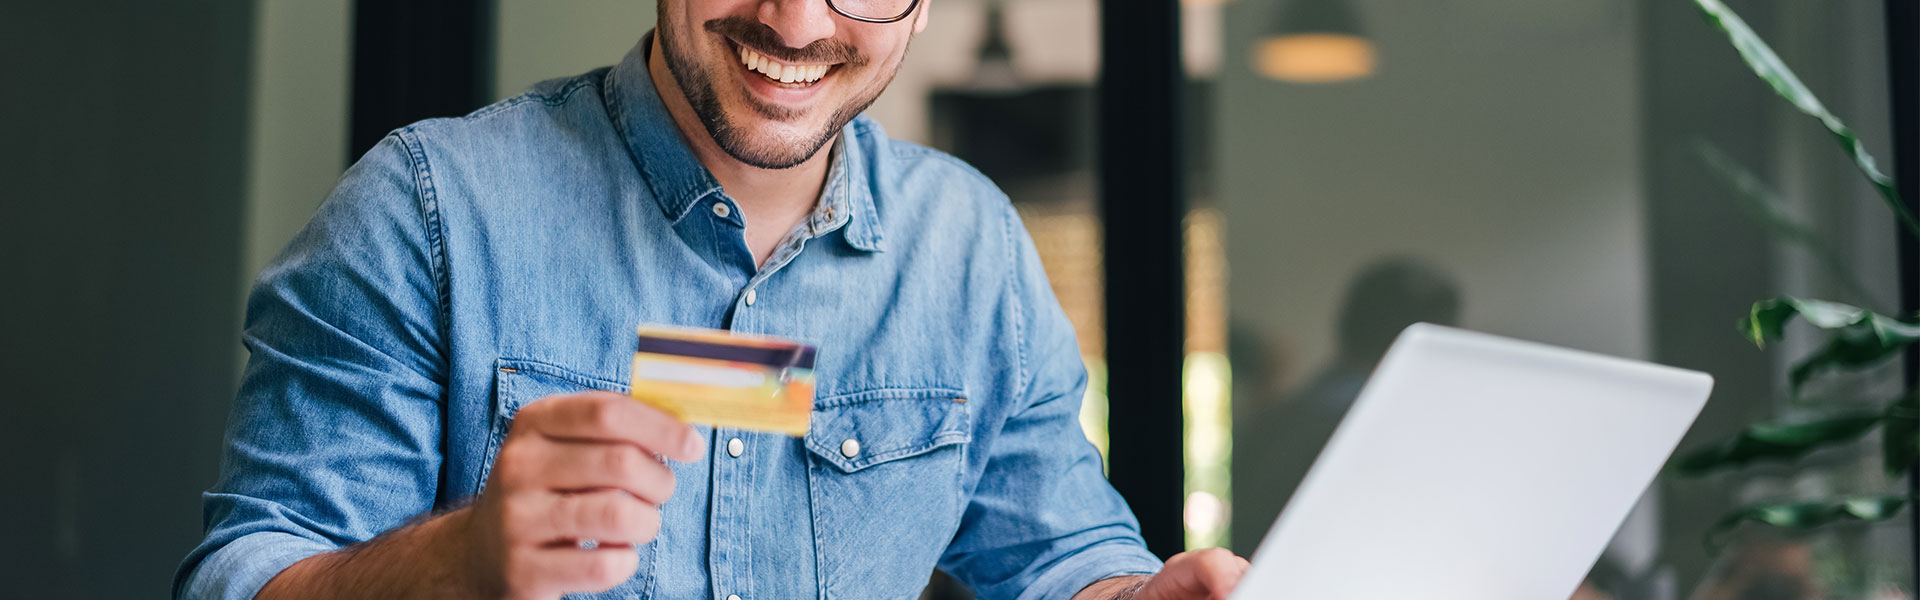 Mit dem Customer Effort Score den Kundenaufwand messen. Ein Man hält eine Kreditkarte in der Hand, während er online etwas bestellt.